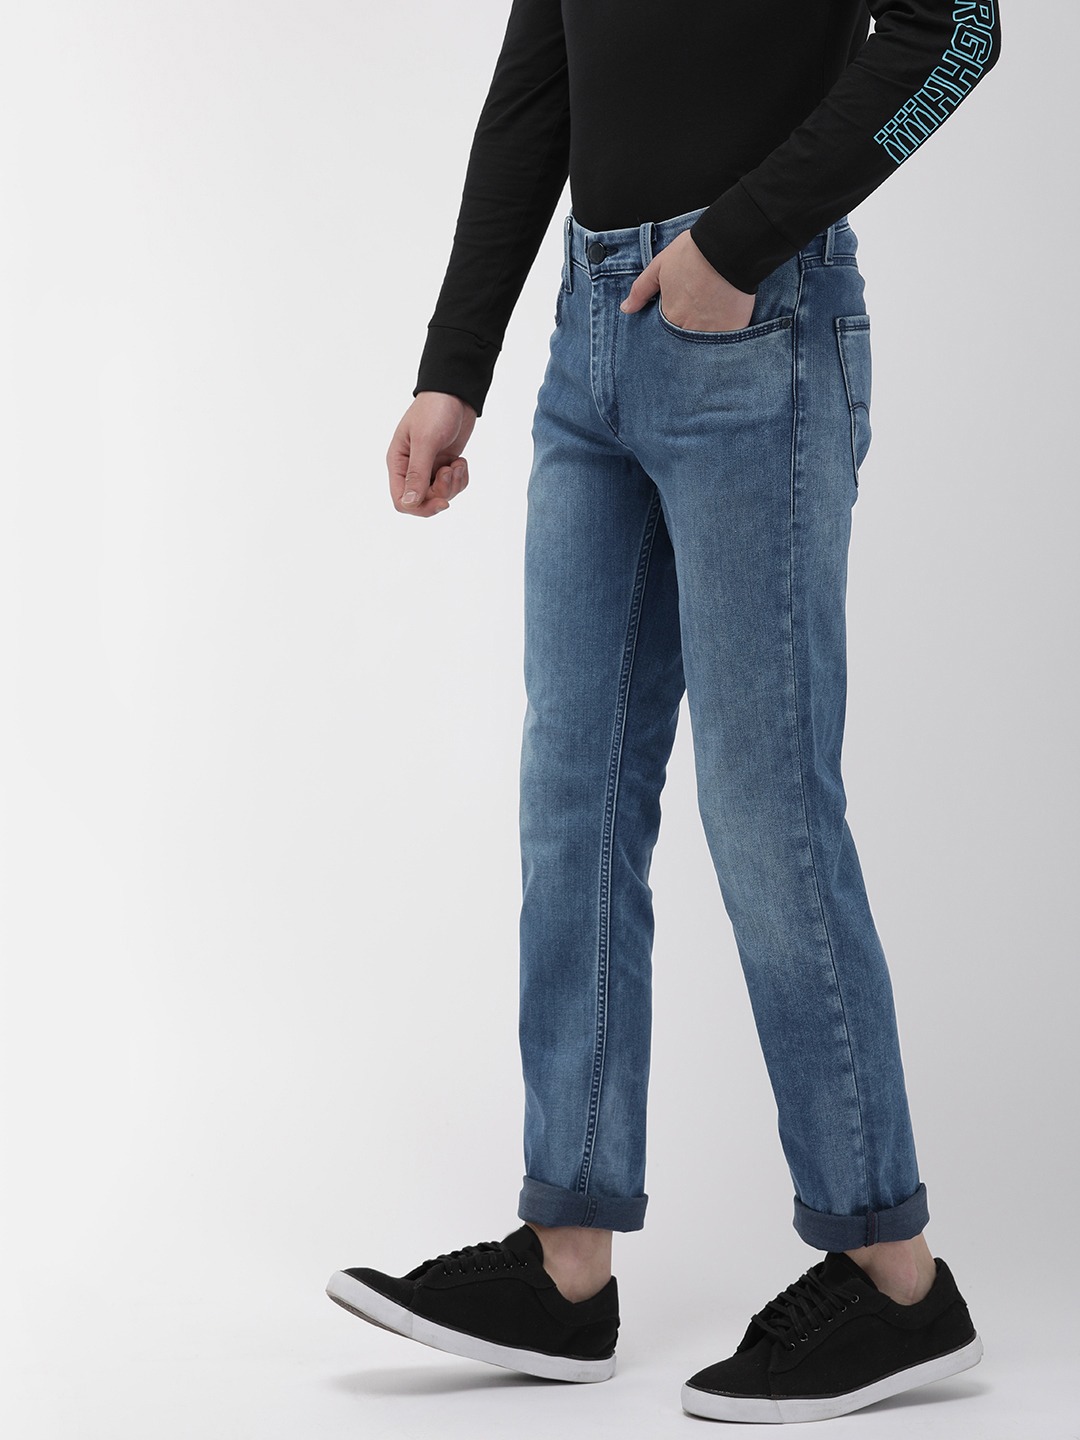 Levis 511 Jeans: Mid Rise Slim Fit Jeans 